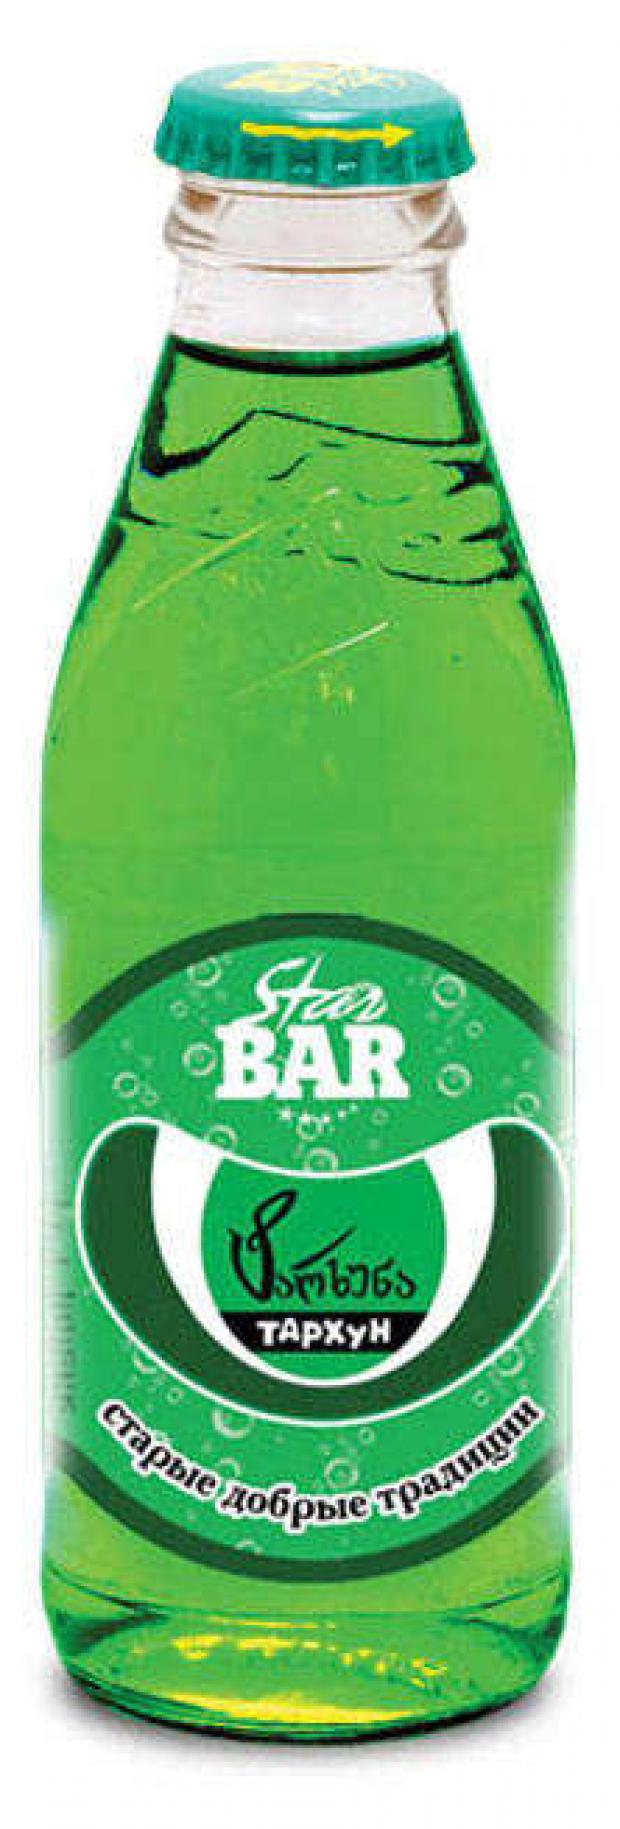 Напиток сильногазированный Star Bar тархун, 175 мл